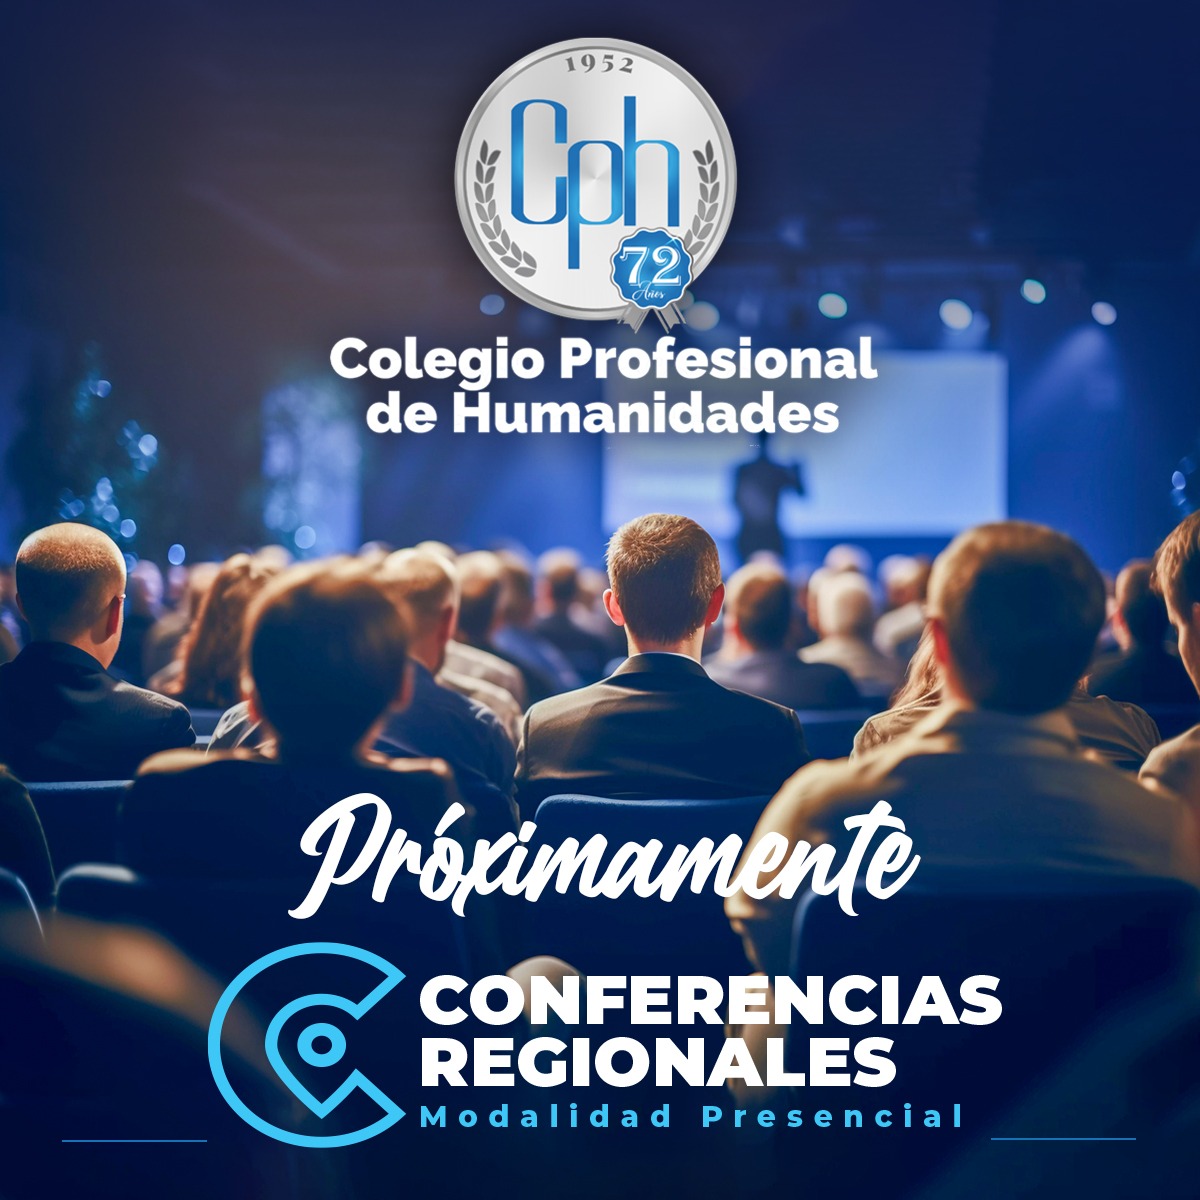 Próximamente Conferencias Regionales – Modalidad presencial